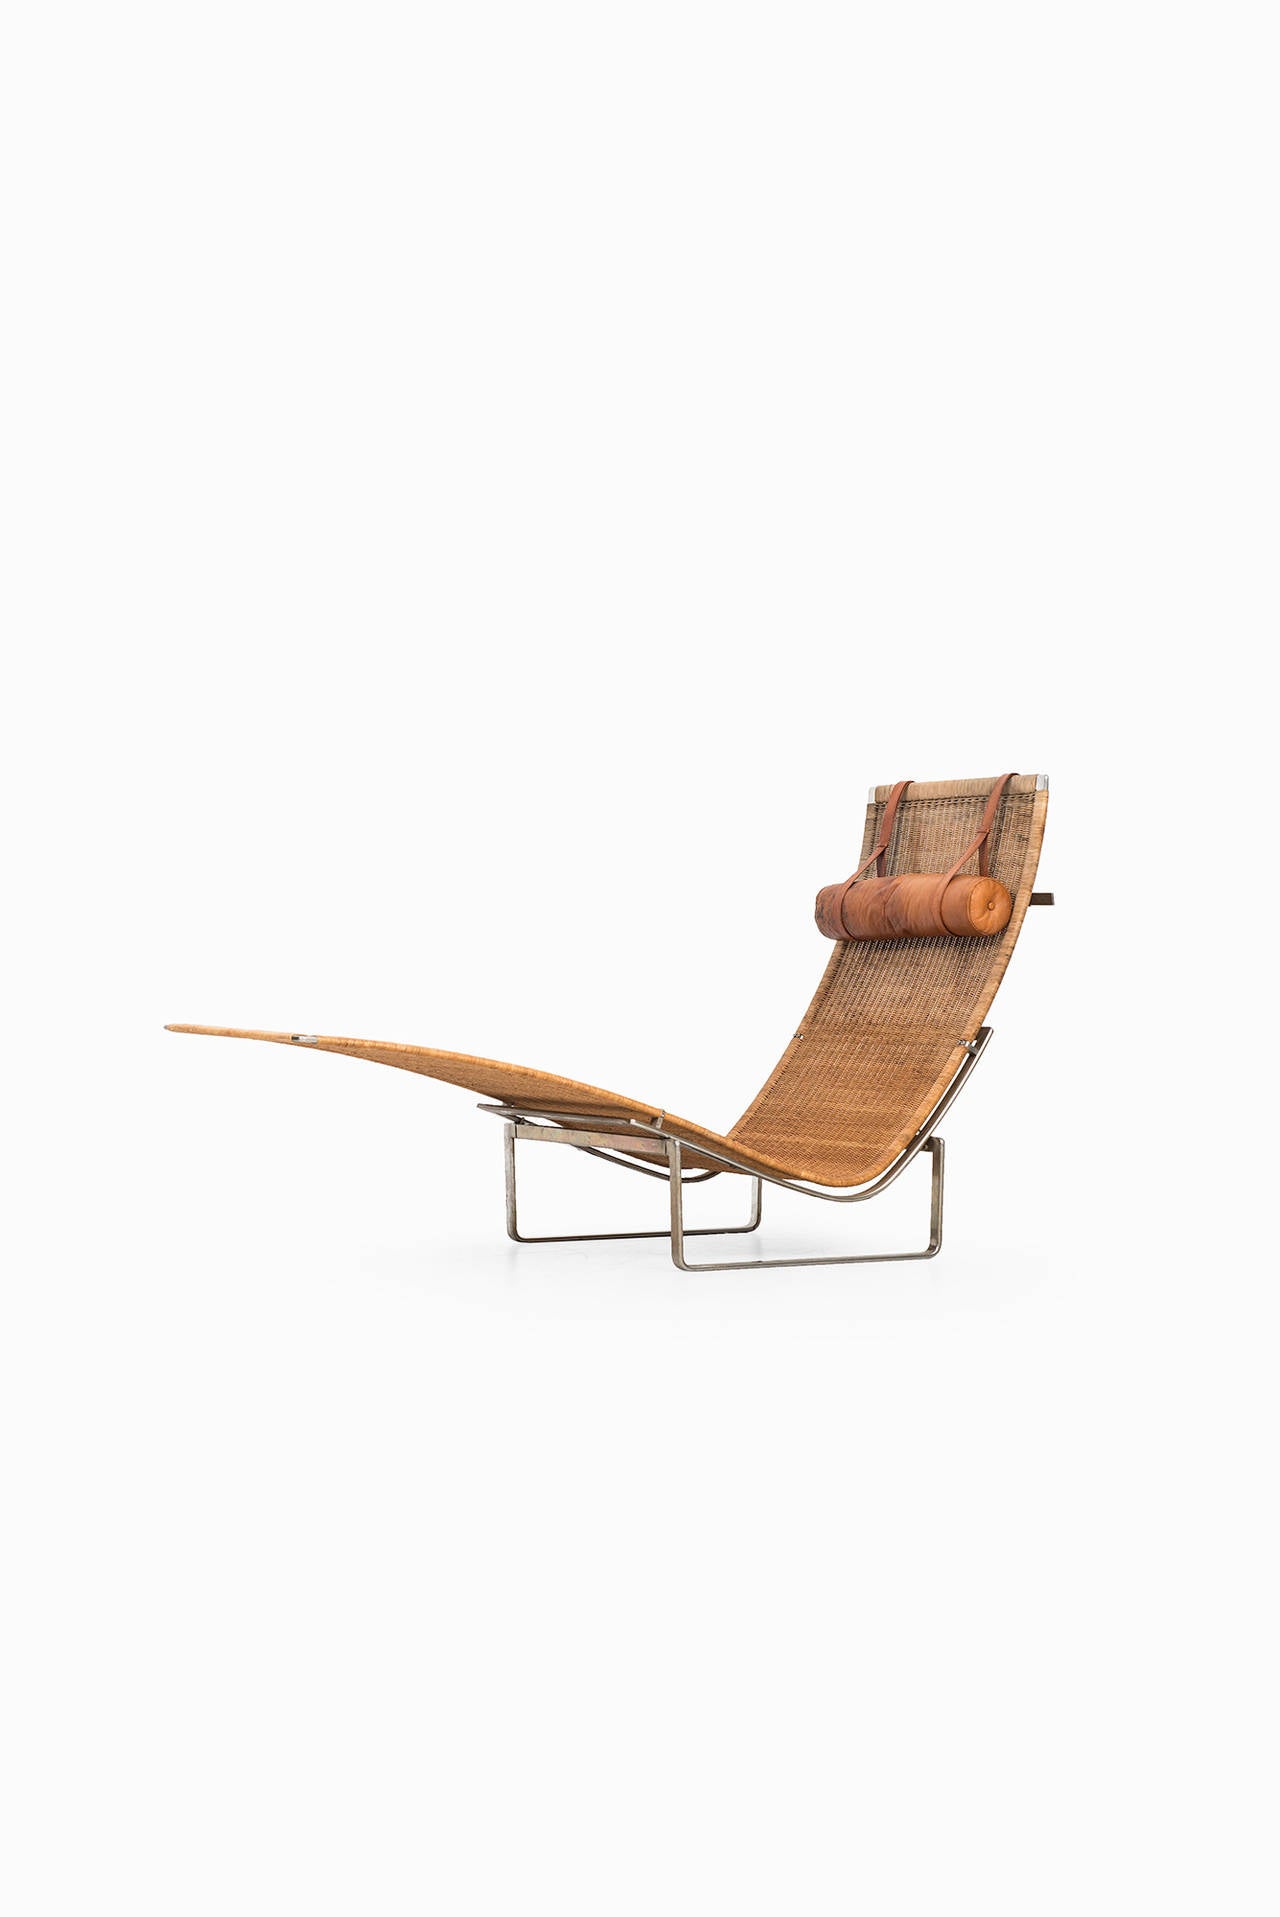 Scandinavian Modern Poul Kjærholm Lounge Chair Model Pk-24 for E. Kold Christensen in Denmark